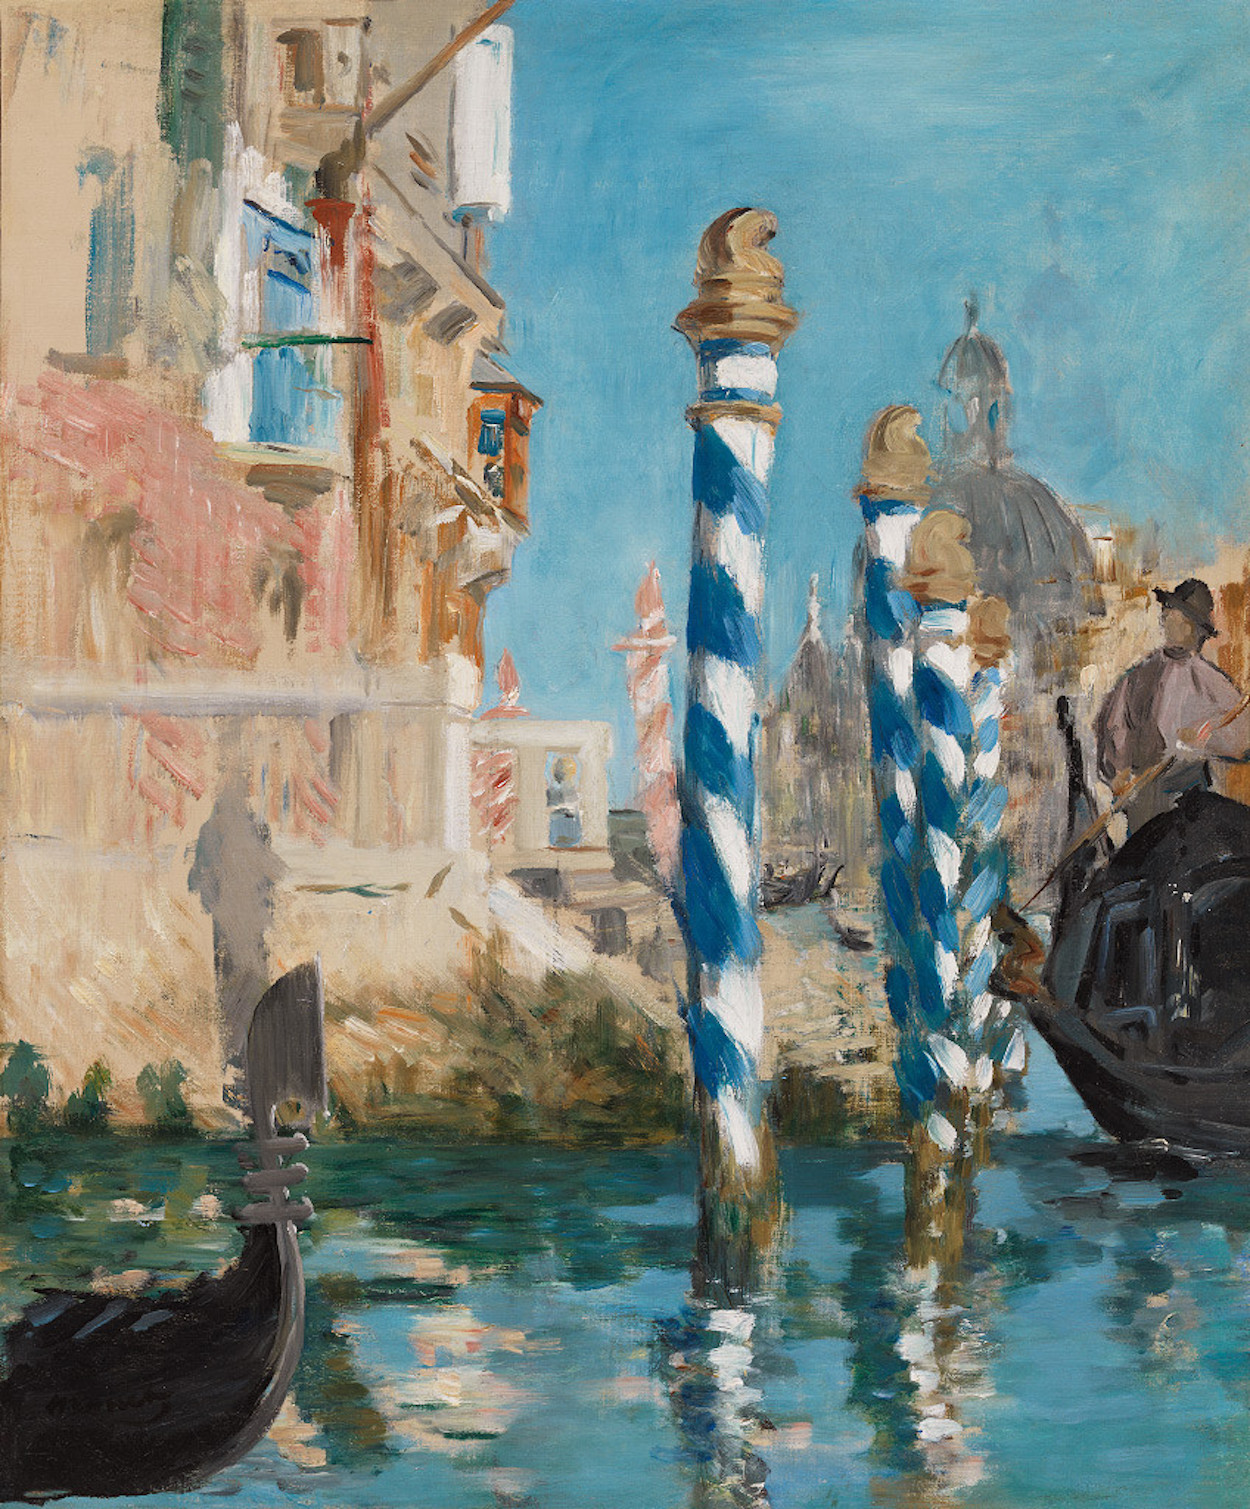 베니스의 풍경 – 대운하(View in Venice – The Grand Canal) by Édouard Manet - 1875 - 57 cm x 47.5 cm 